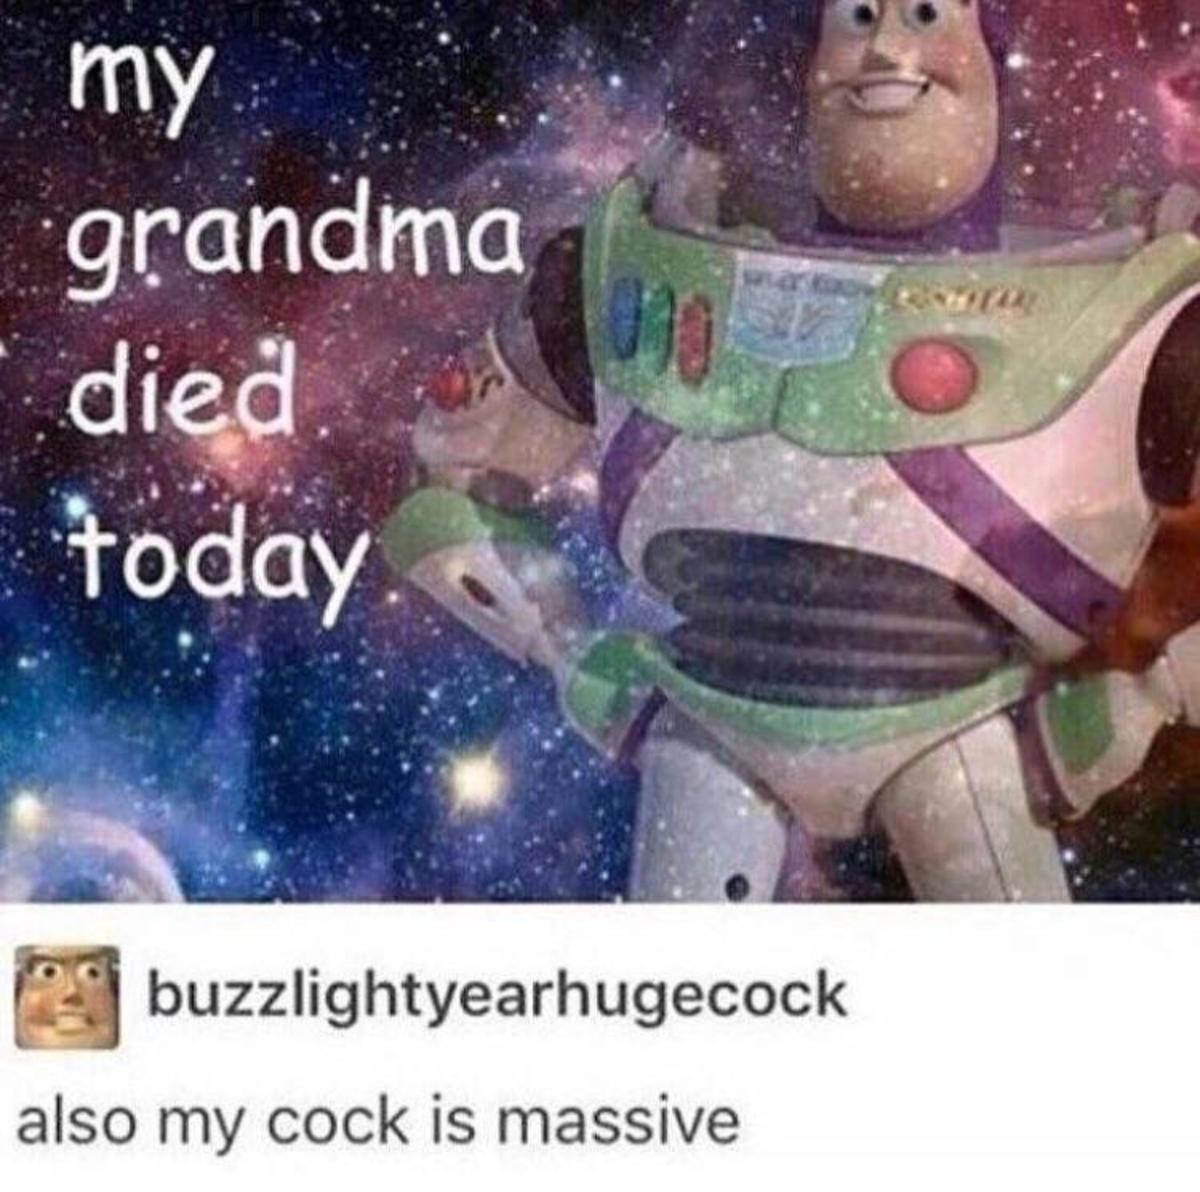 Buzz lightyear dick meme